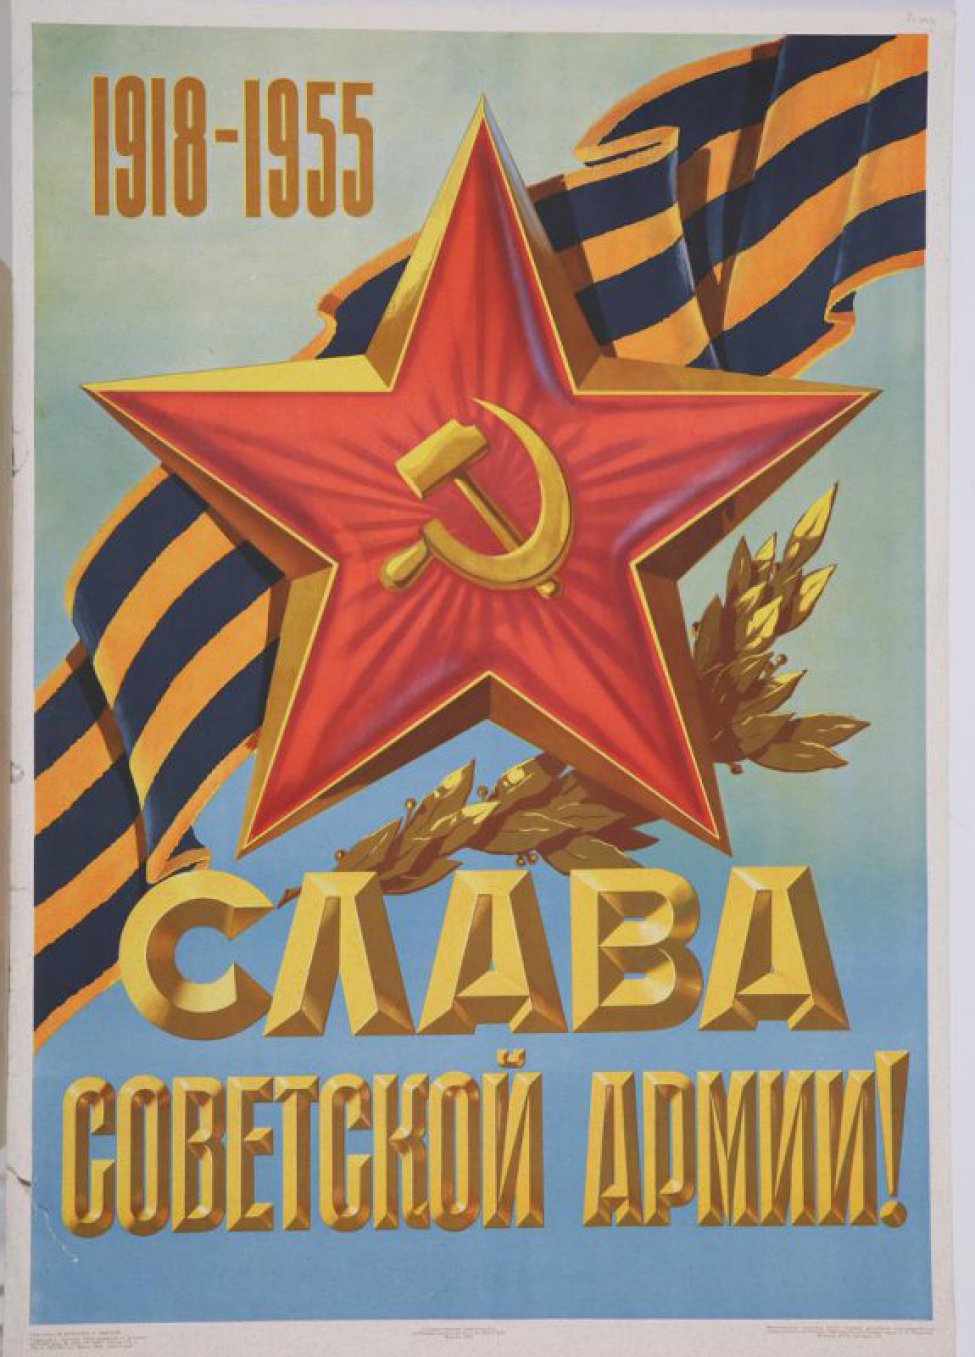 Изображена в  верхней части плаката Красная звезда с серпом и молотом посередине; под ним лавровая ветка; ниже на голубом фоне текст:  " Слава Советской Армии!". Вверху: "1918-1955".